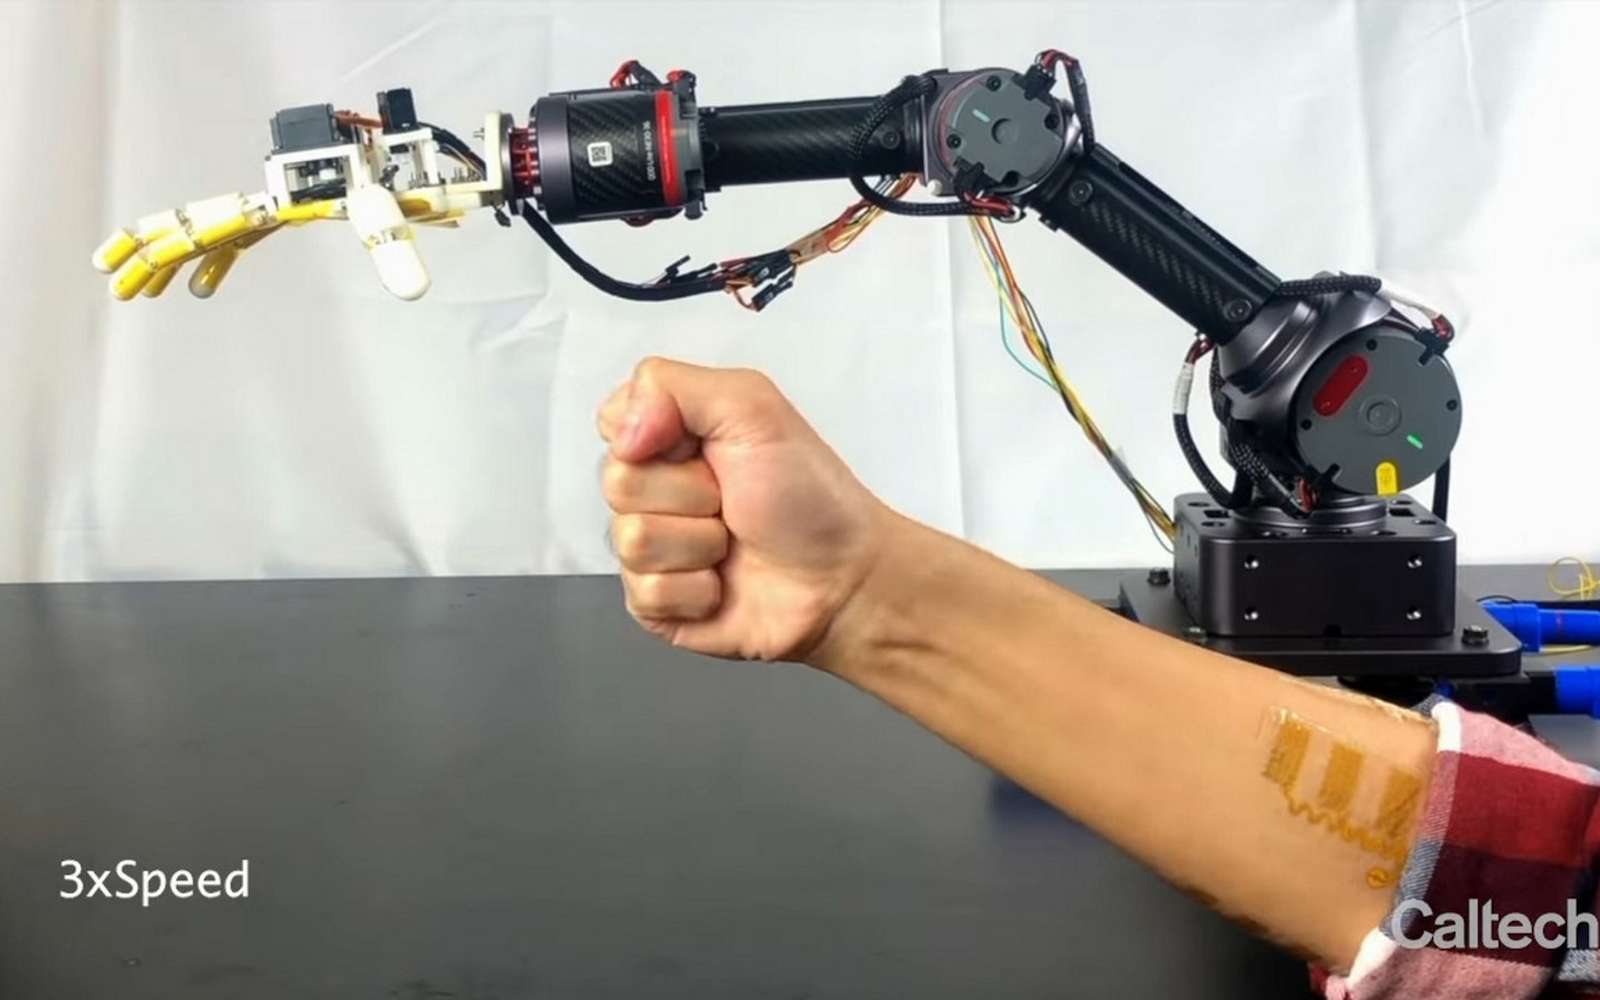 Ce bras robotique peut sentir les objets qu’il touche et transmettre l’information tactile à l’opérateur. © Caltech